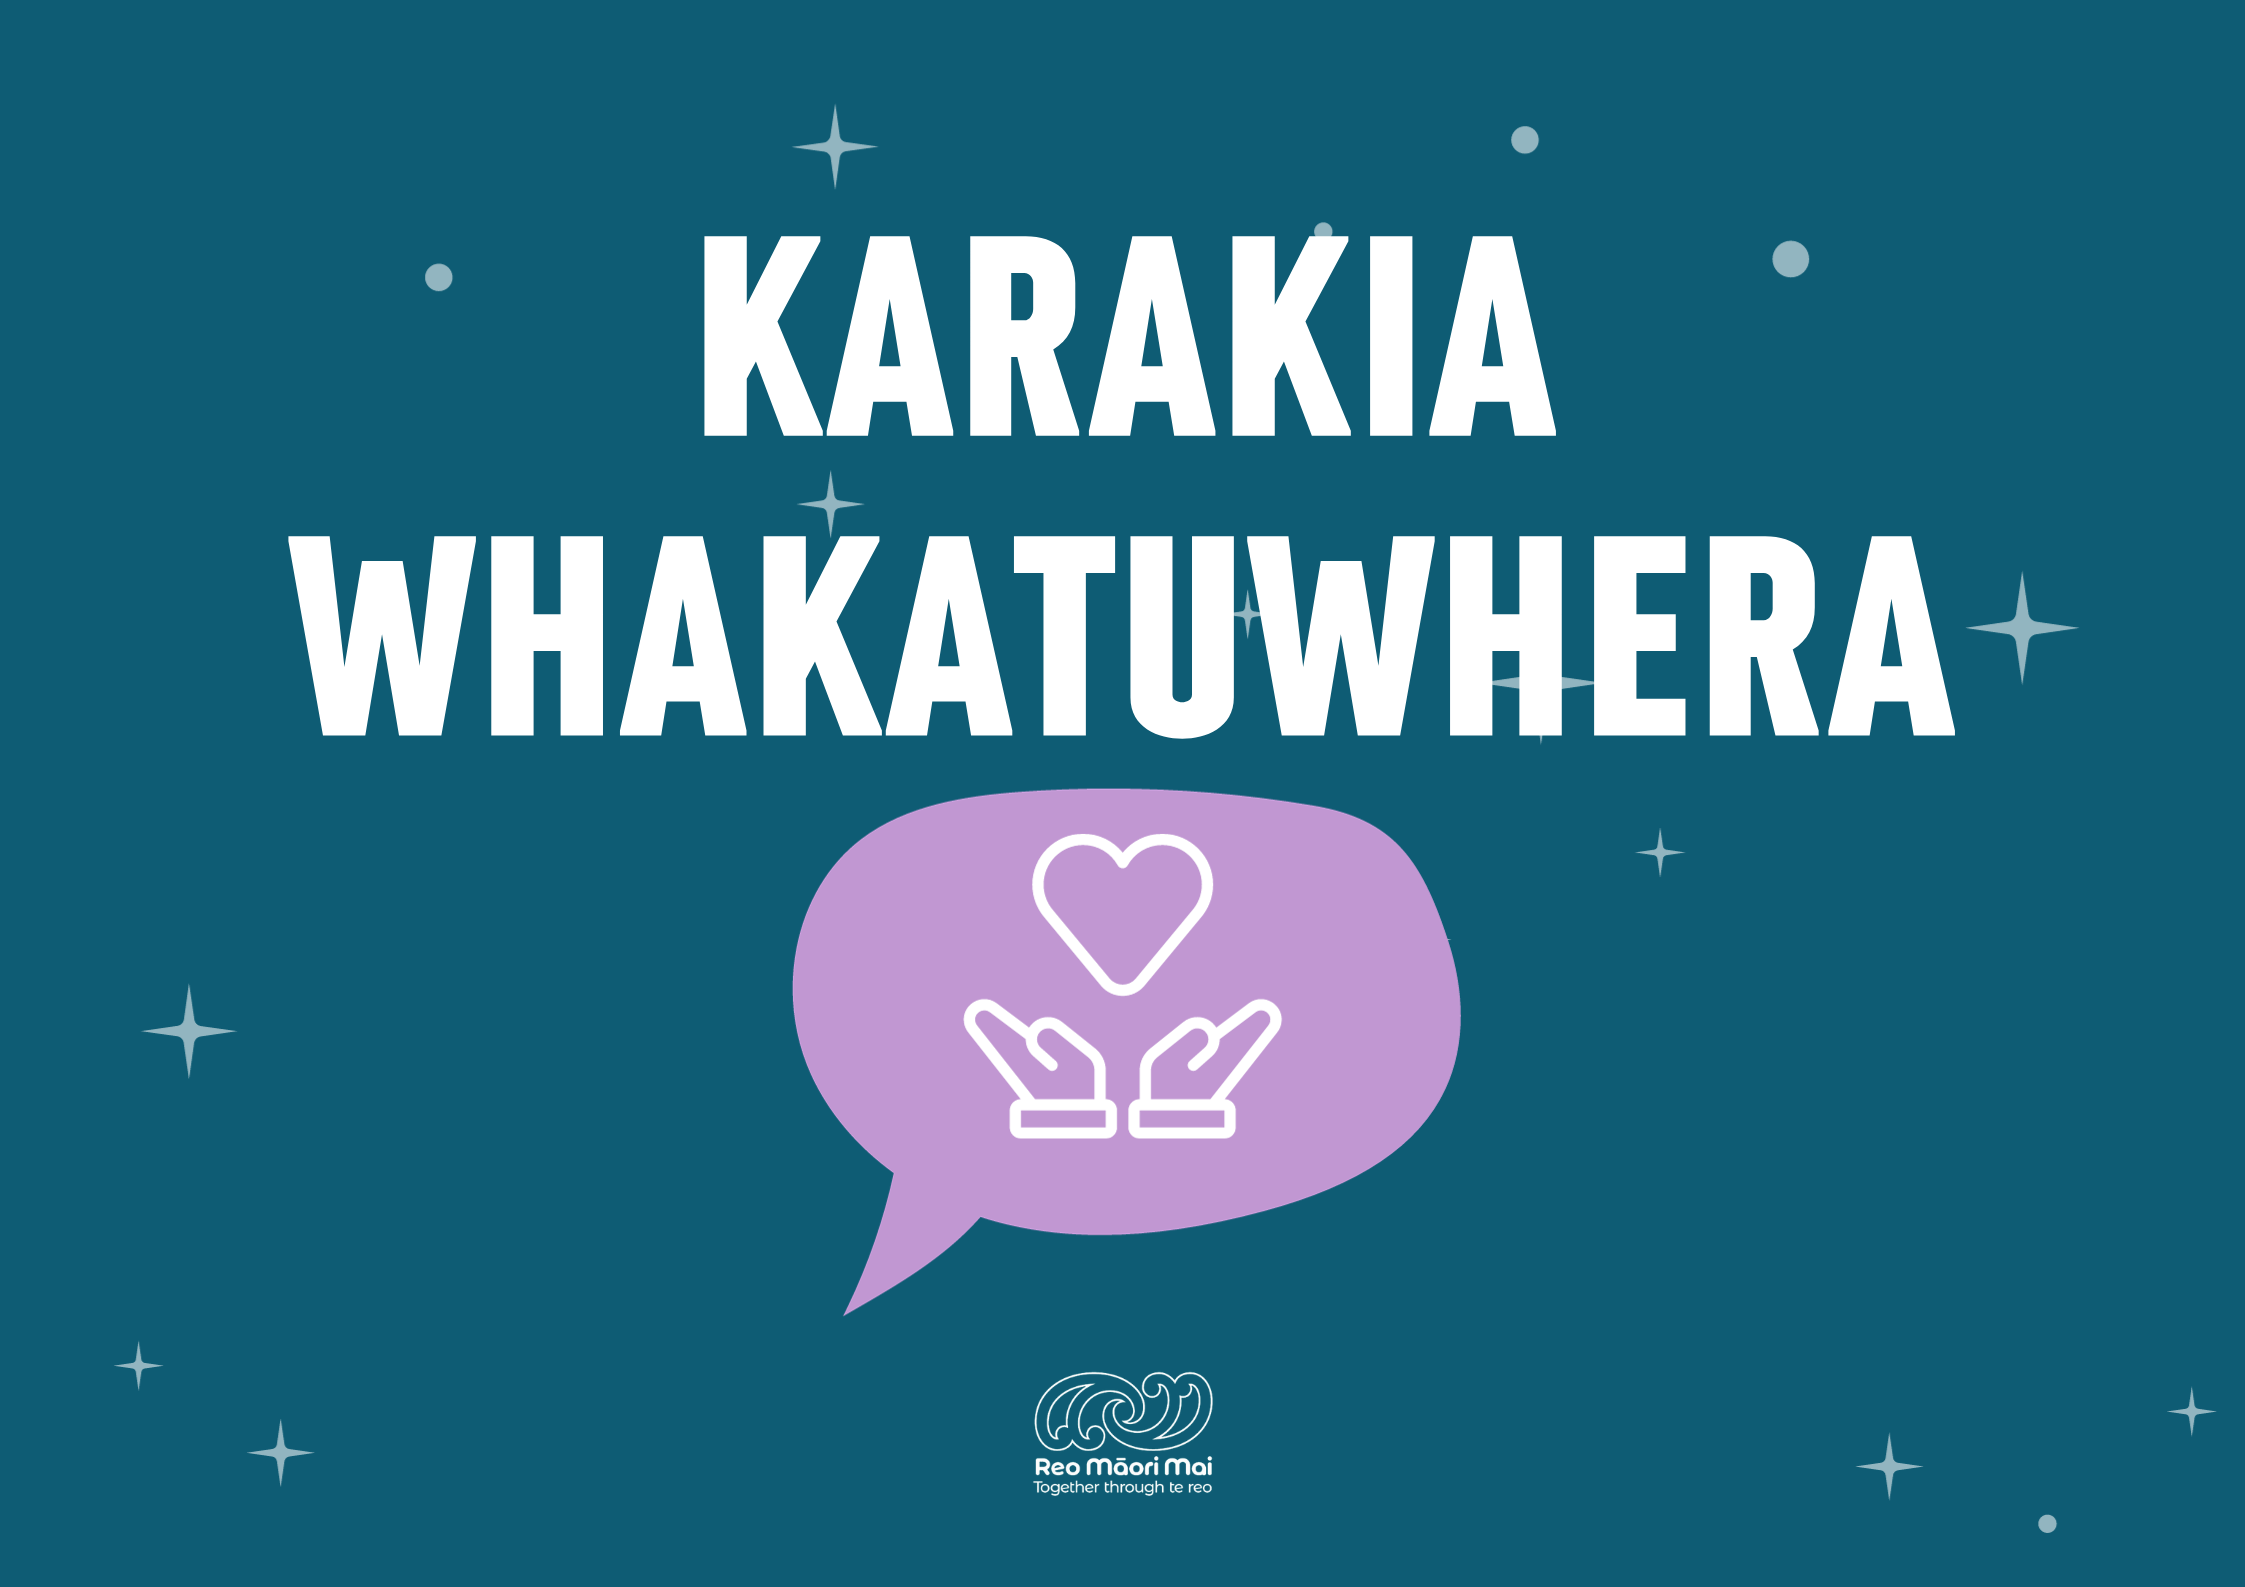 Karakia Whakatuwhera